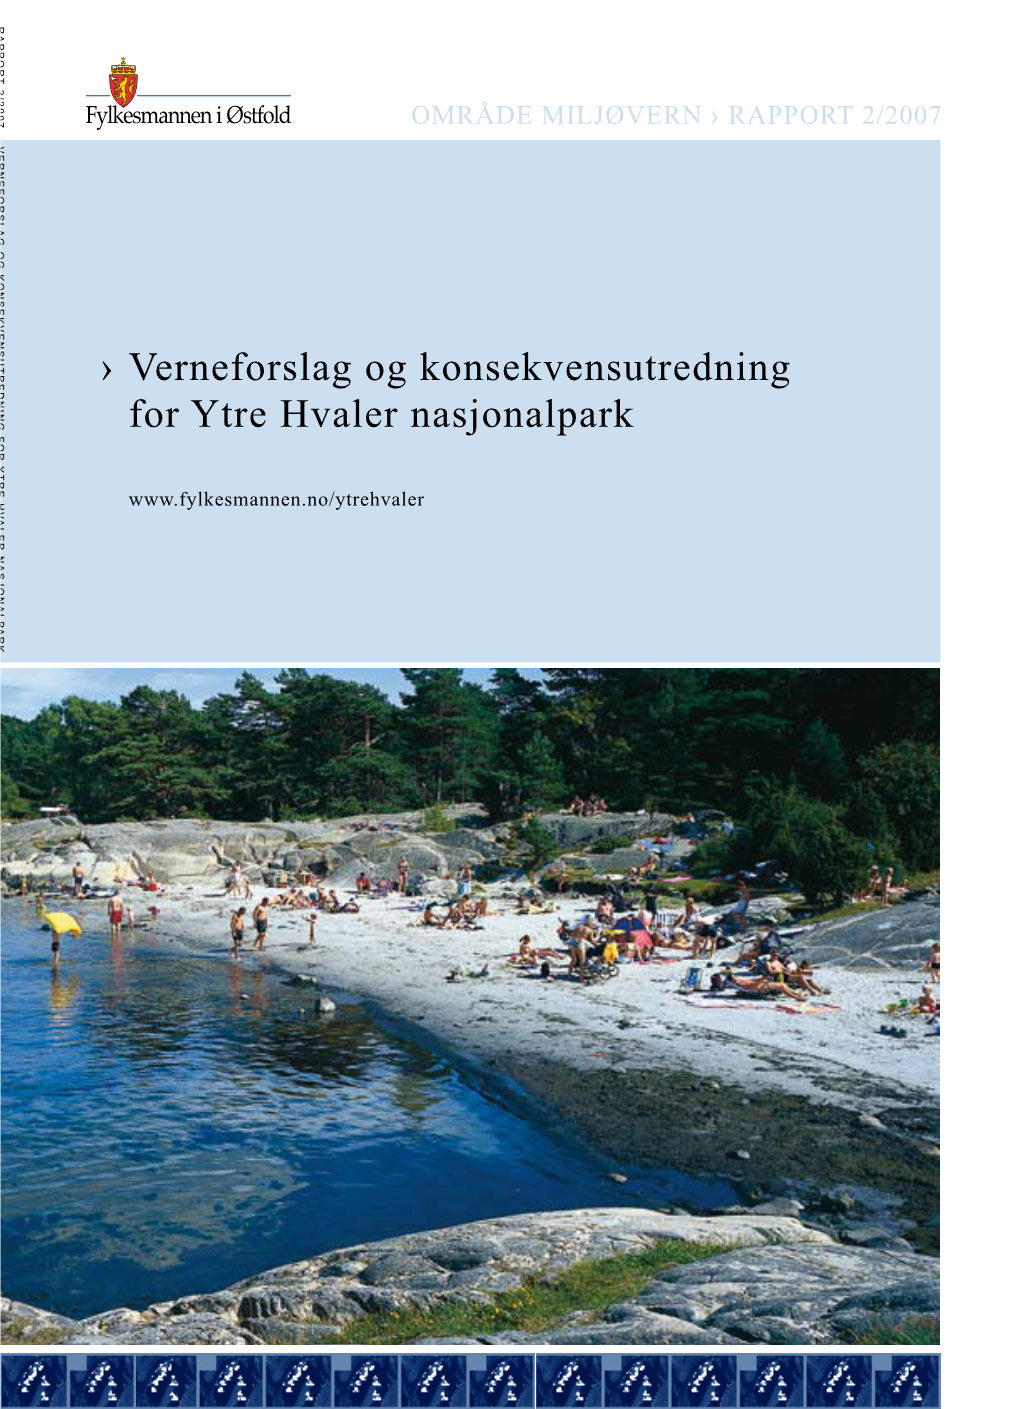 Verneforslag Og Konsekvensutredning for Ytre Hvaler Nasjonalpark